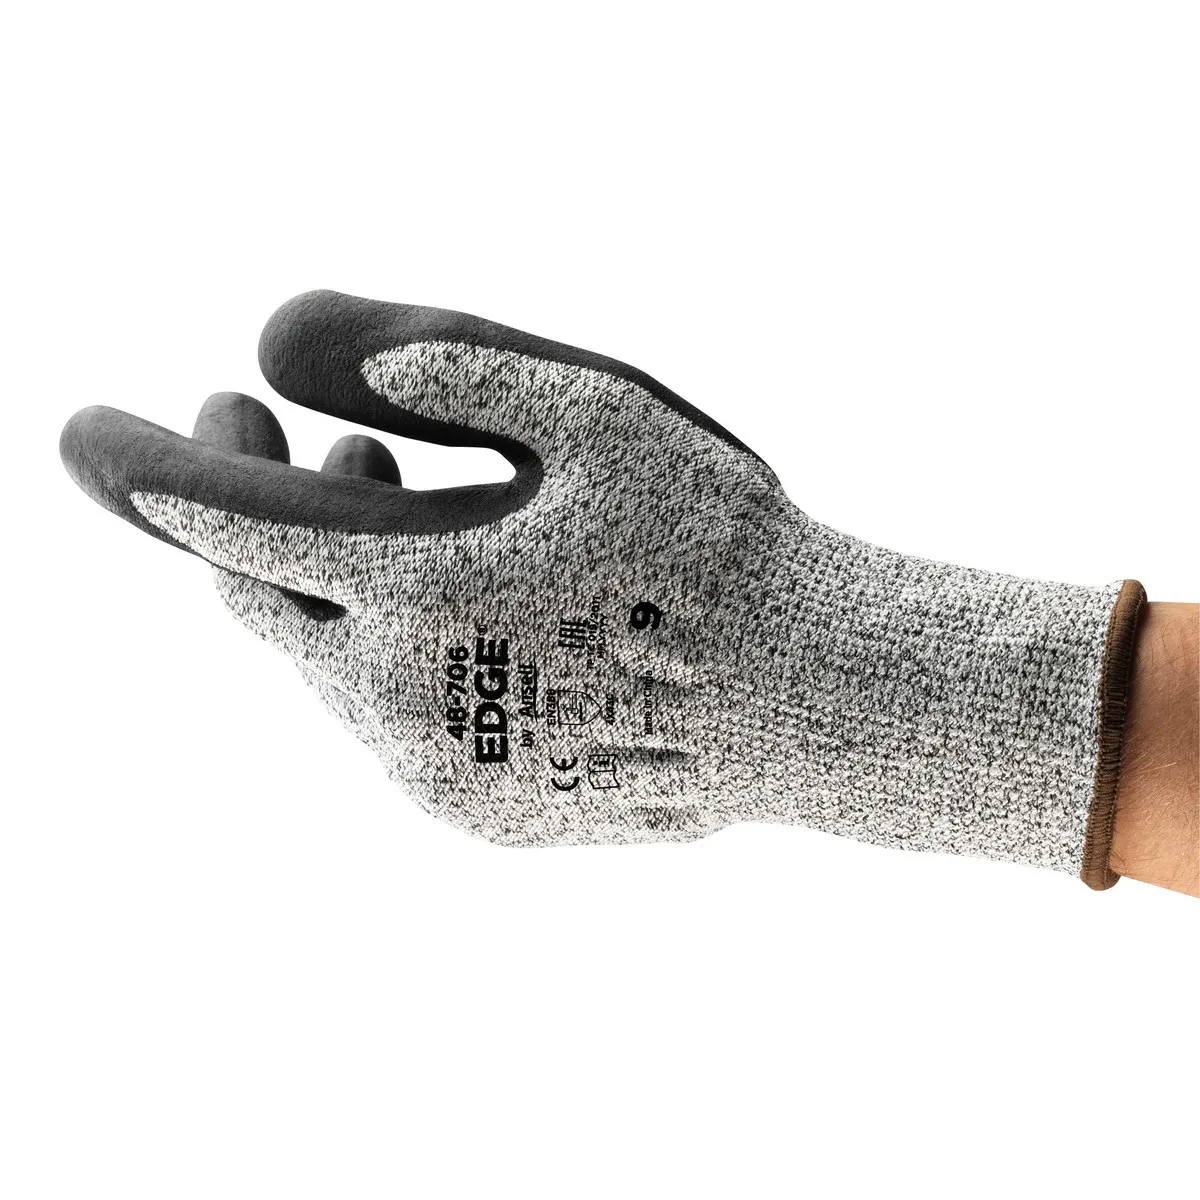 Zaštitne rukavice EDGE 48-706 sive-crne - Ansell - PAR 